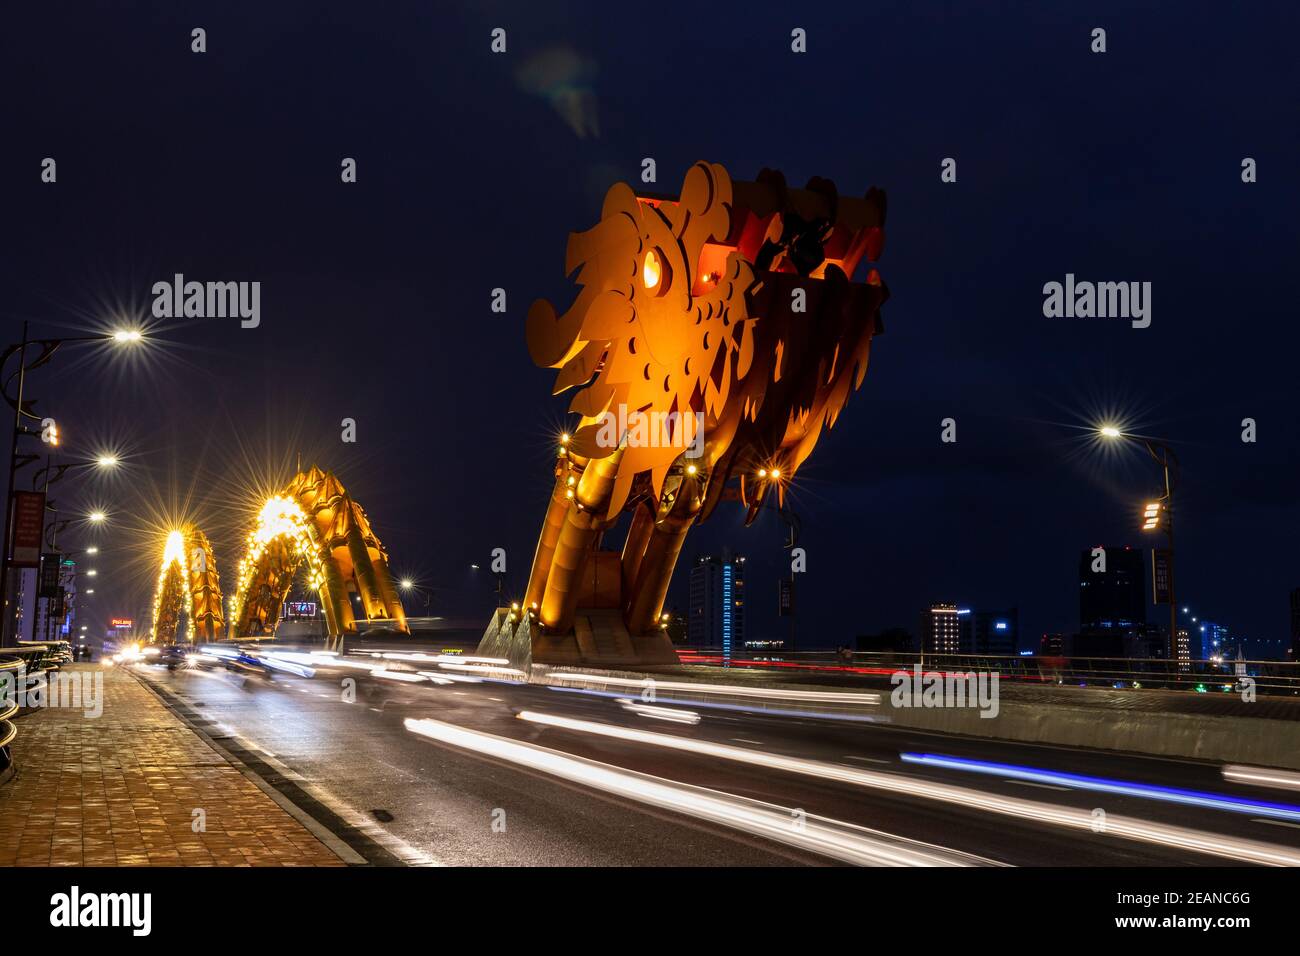 The Dragon Bridge of Da Nang in Vietnam Stock Photo